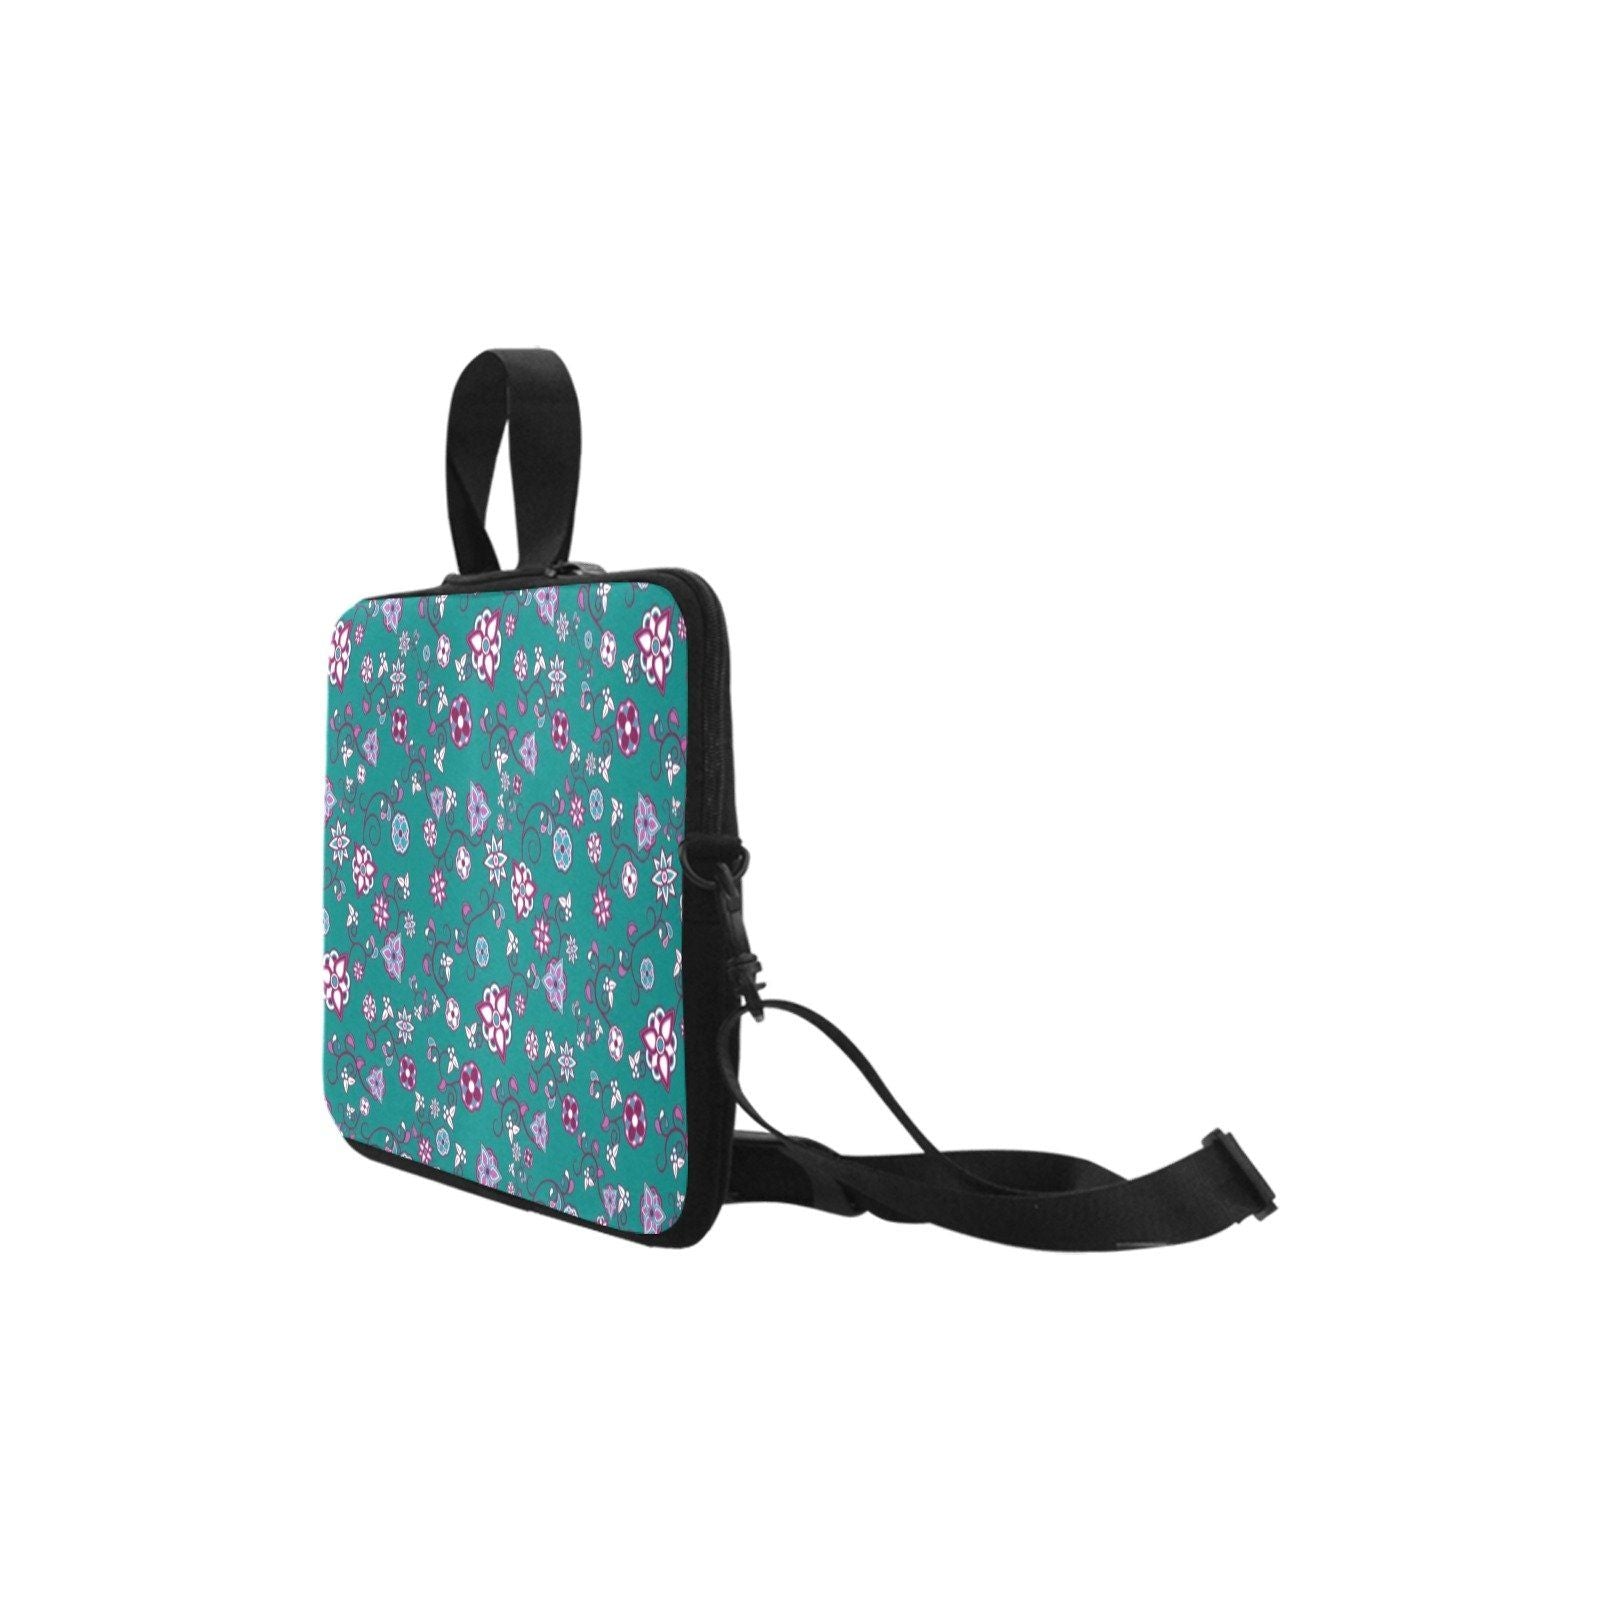 Burgundy Bloom Laptop Handbags 11" bag e-joyer 